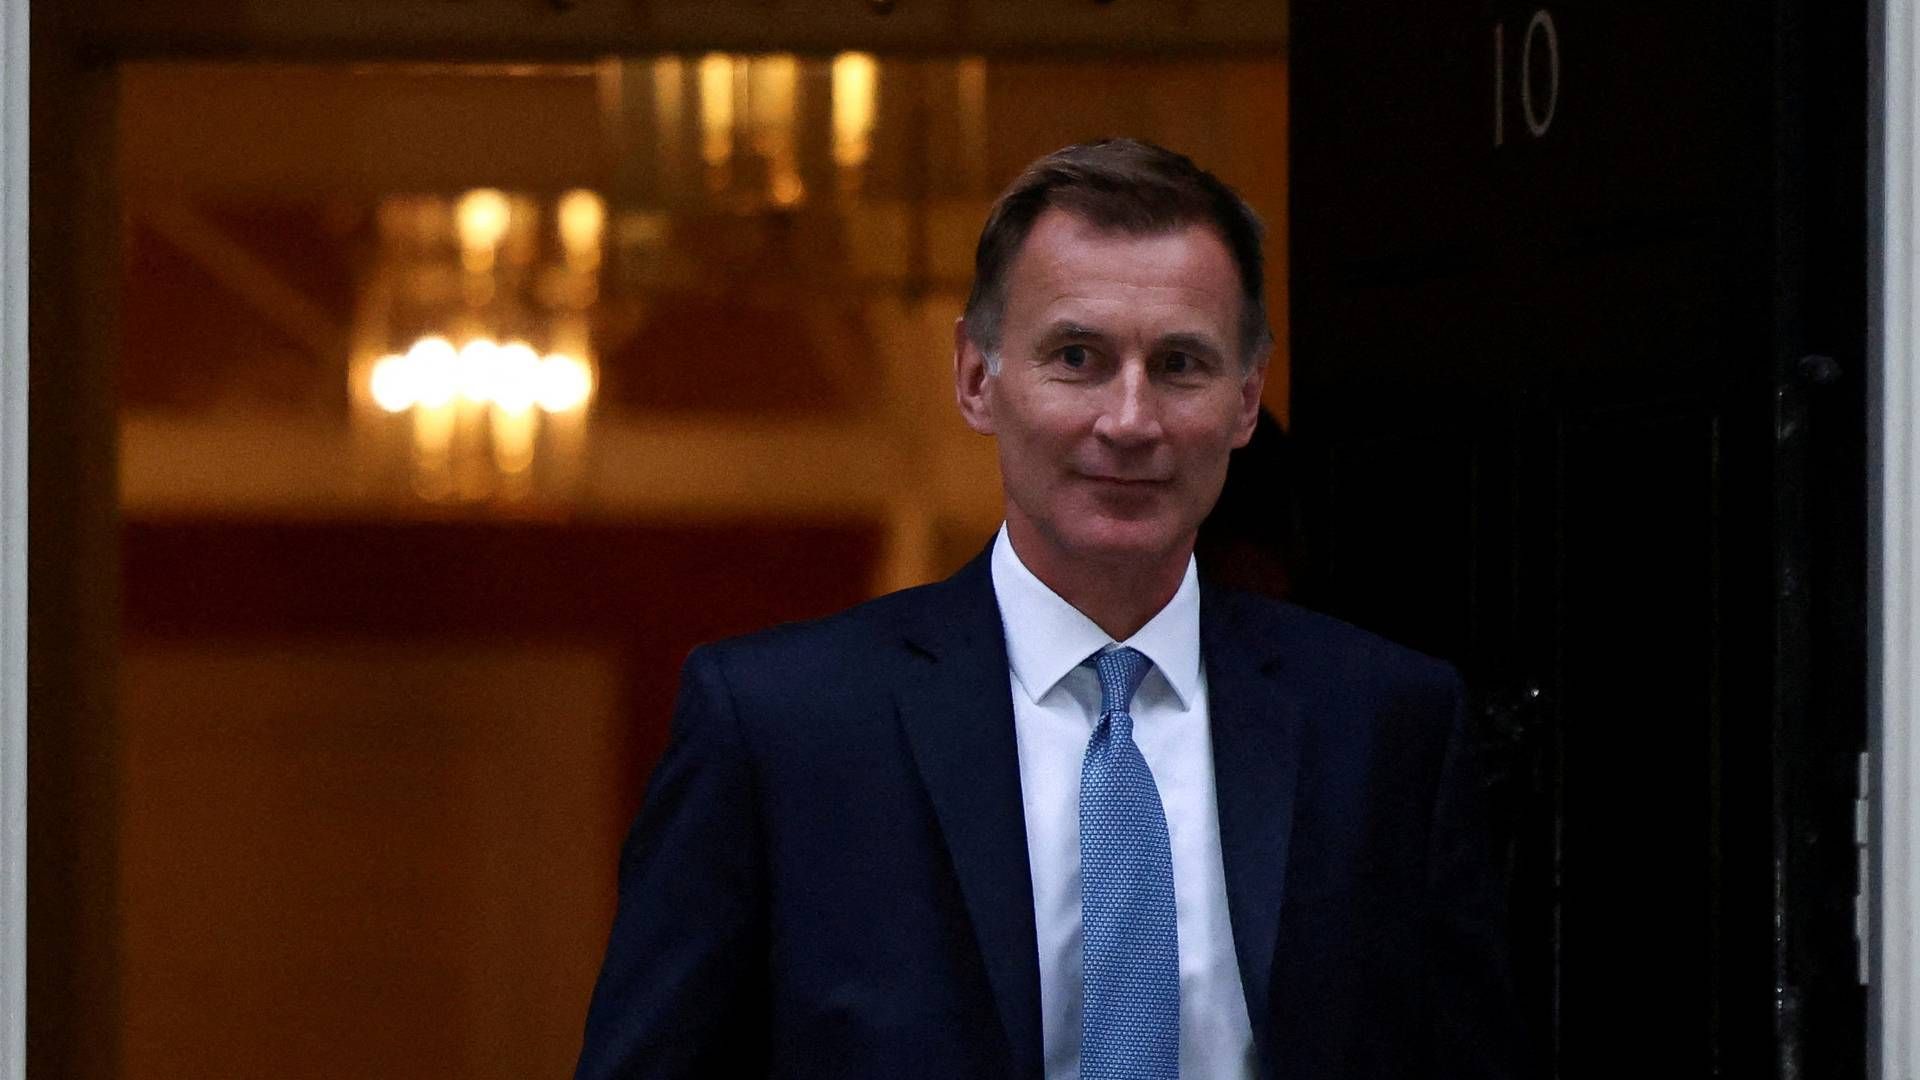 Jeremy Hunt var til møde i Downing Street 10 i sidste uge, hvor han blev udpeget som ny finansminister. | Foto: Henry Nicholls/REUTERS / X06612